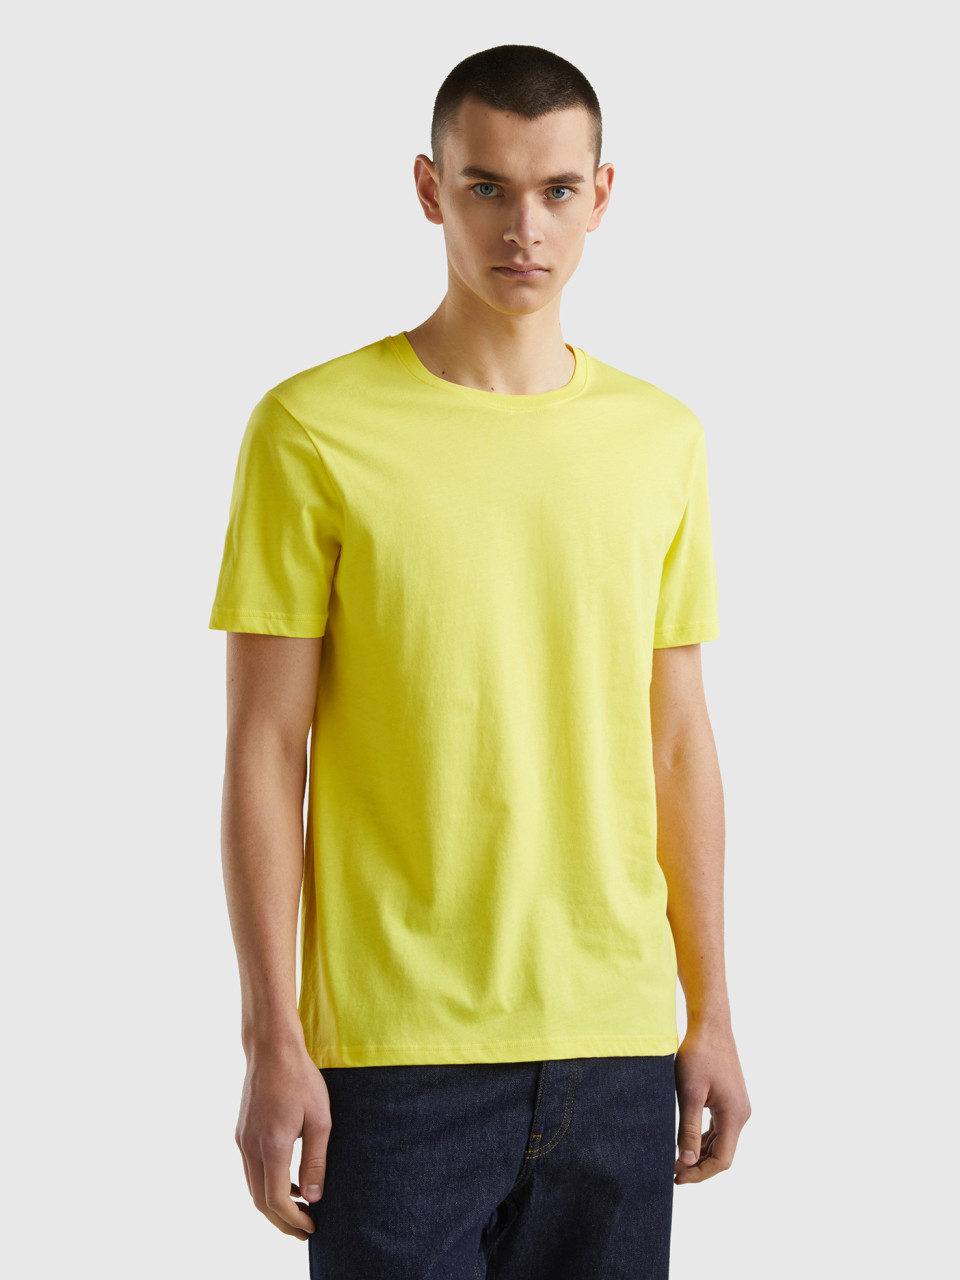 Benetton, Yellow T-shirt, Yellow, Men